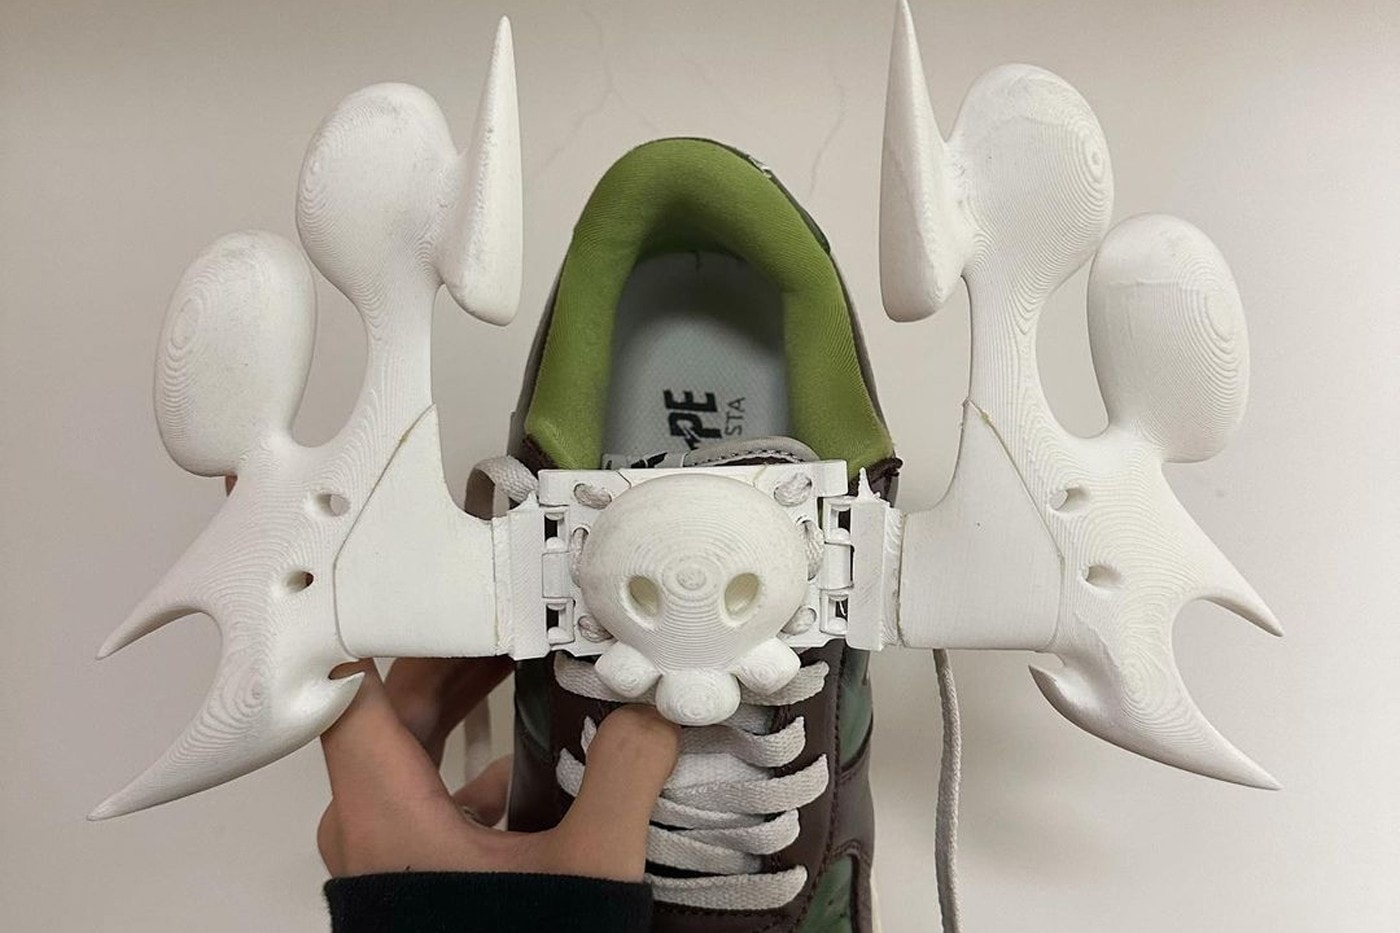 17 歲藝術家 Offgod 釋出「可拆卸式」鞋扣雕塑引發熱議